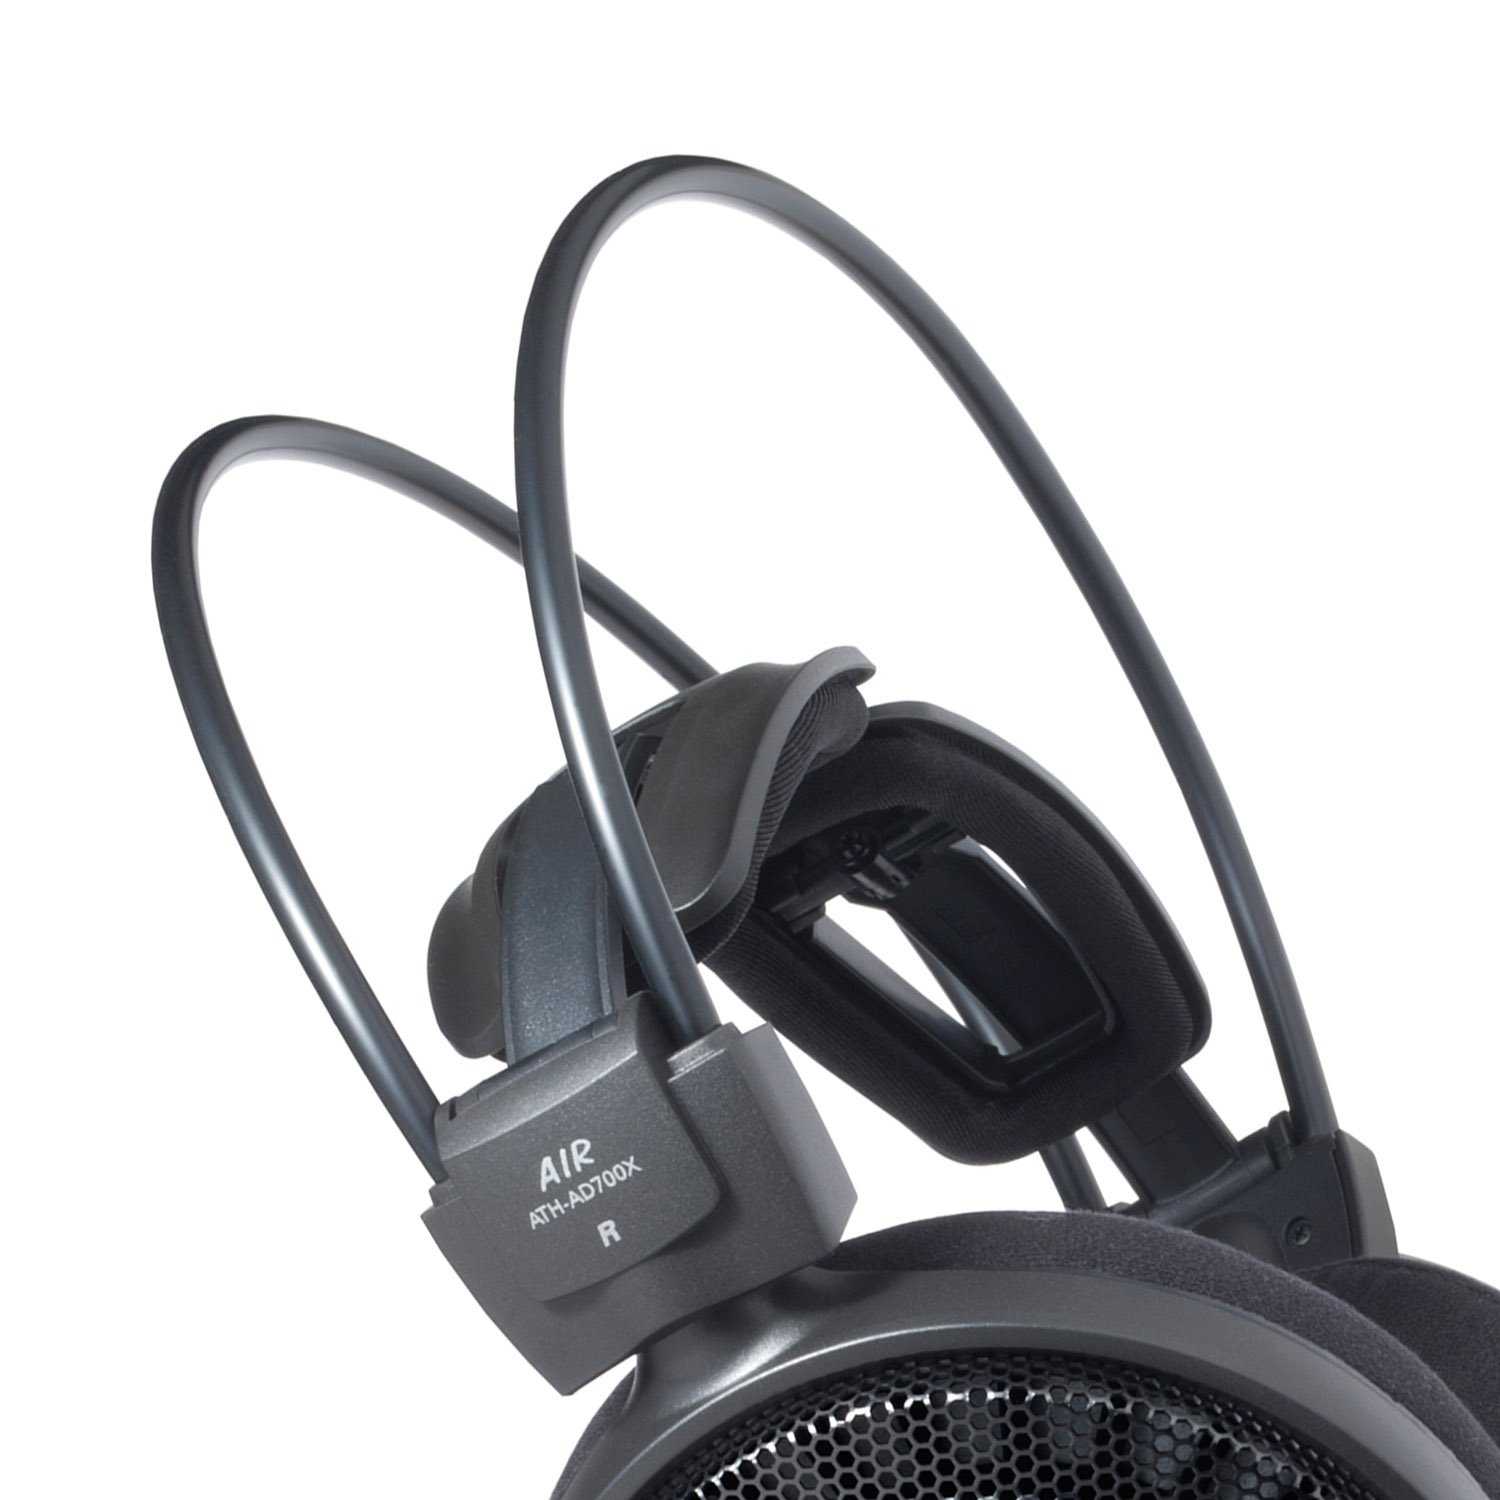 鐵三角 ATH-AD700X 開放式 耳罩式耳機 | 金曲音響